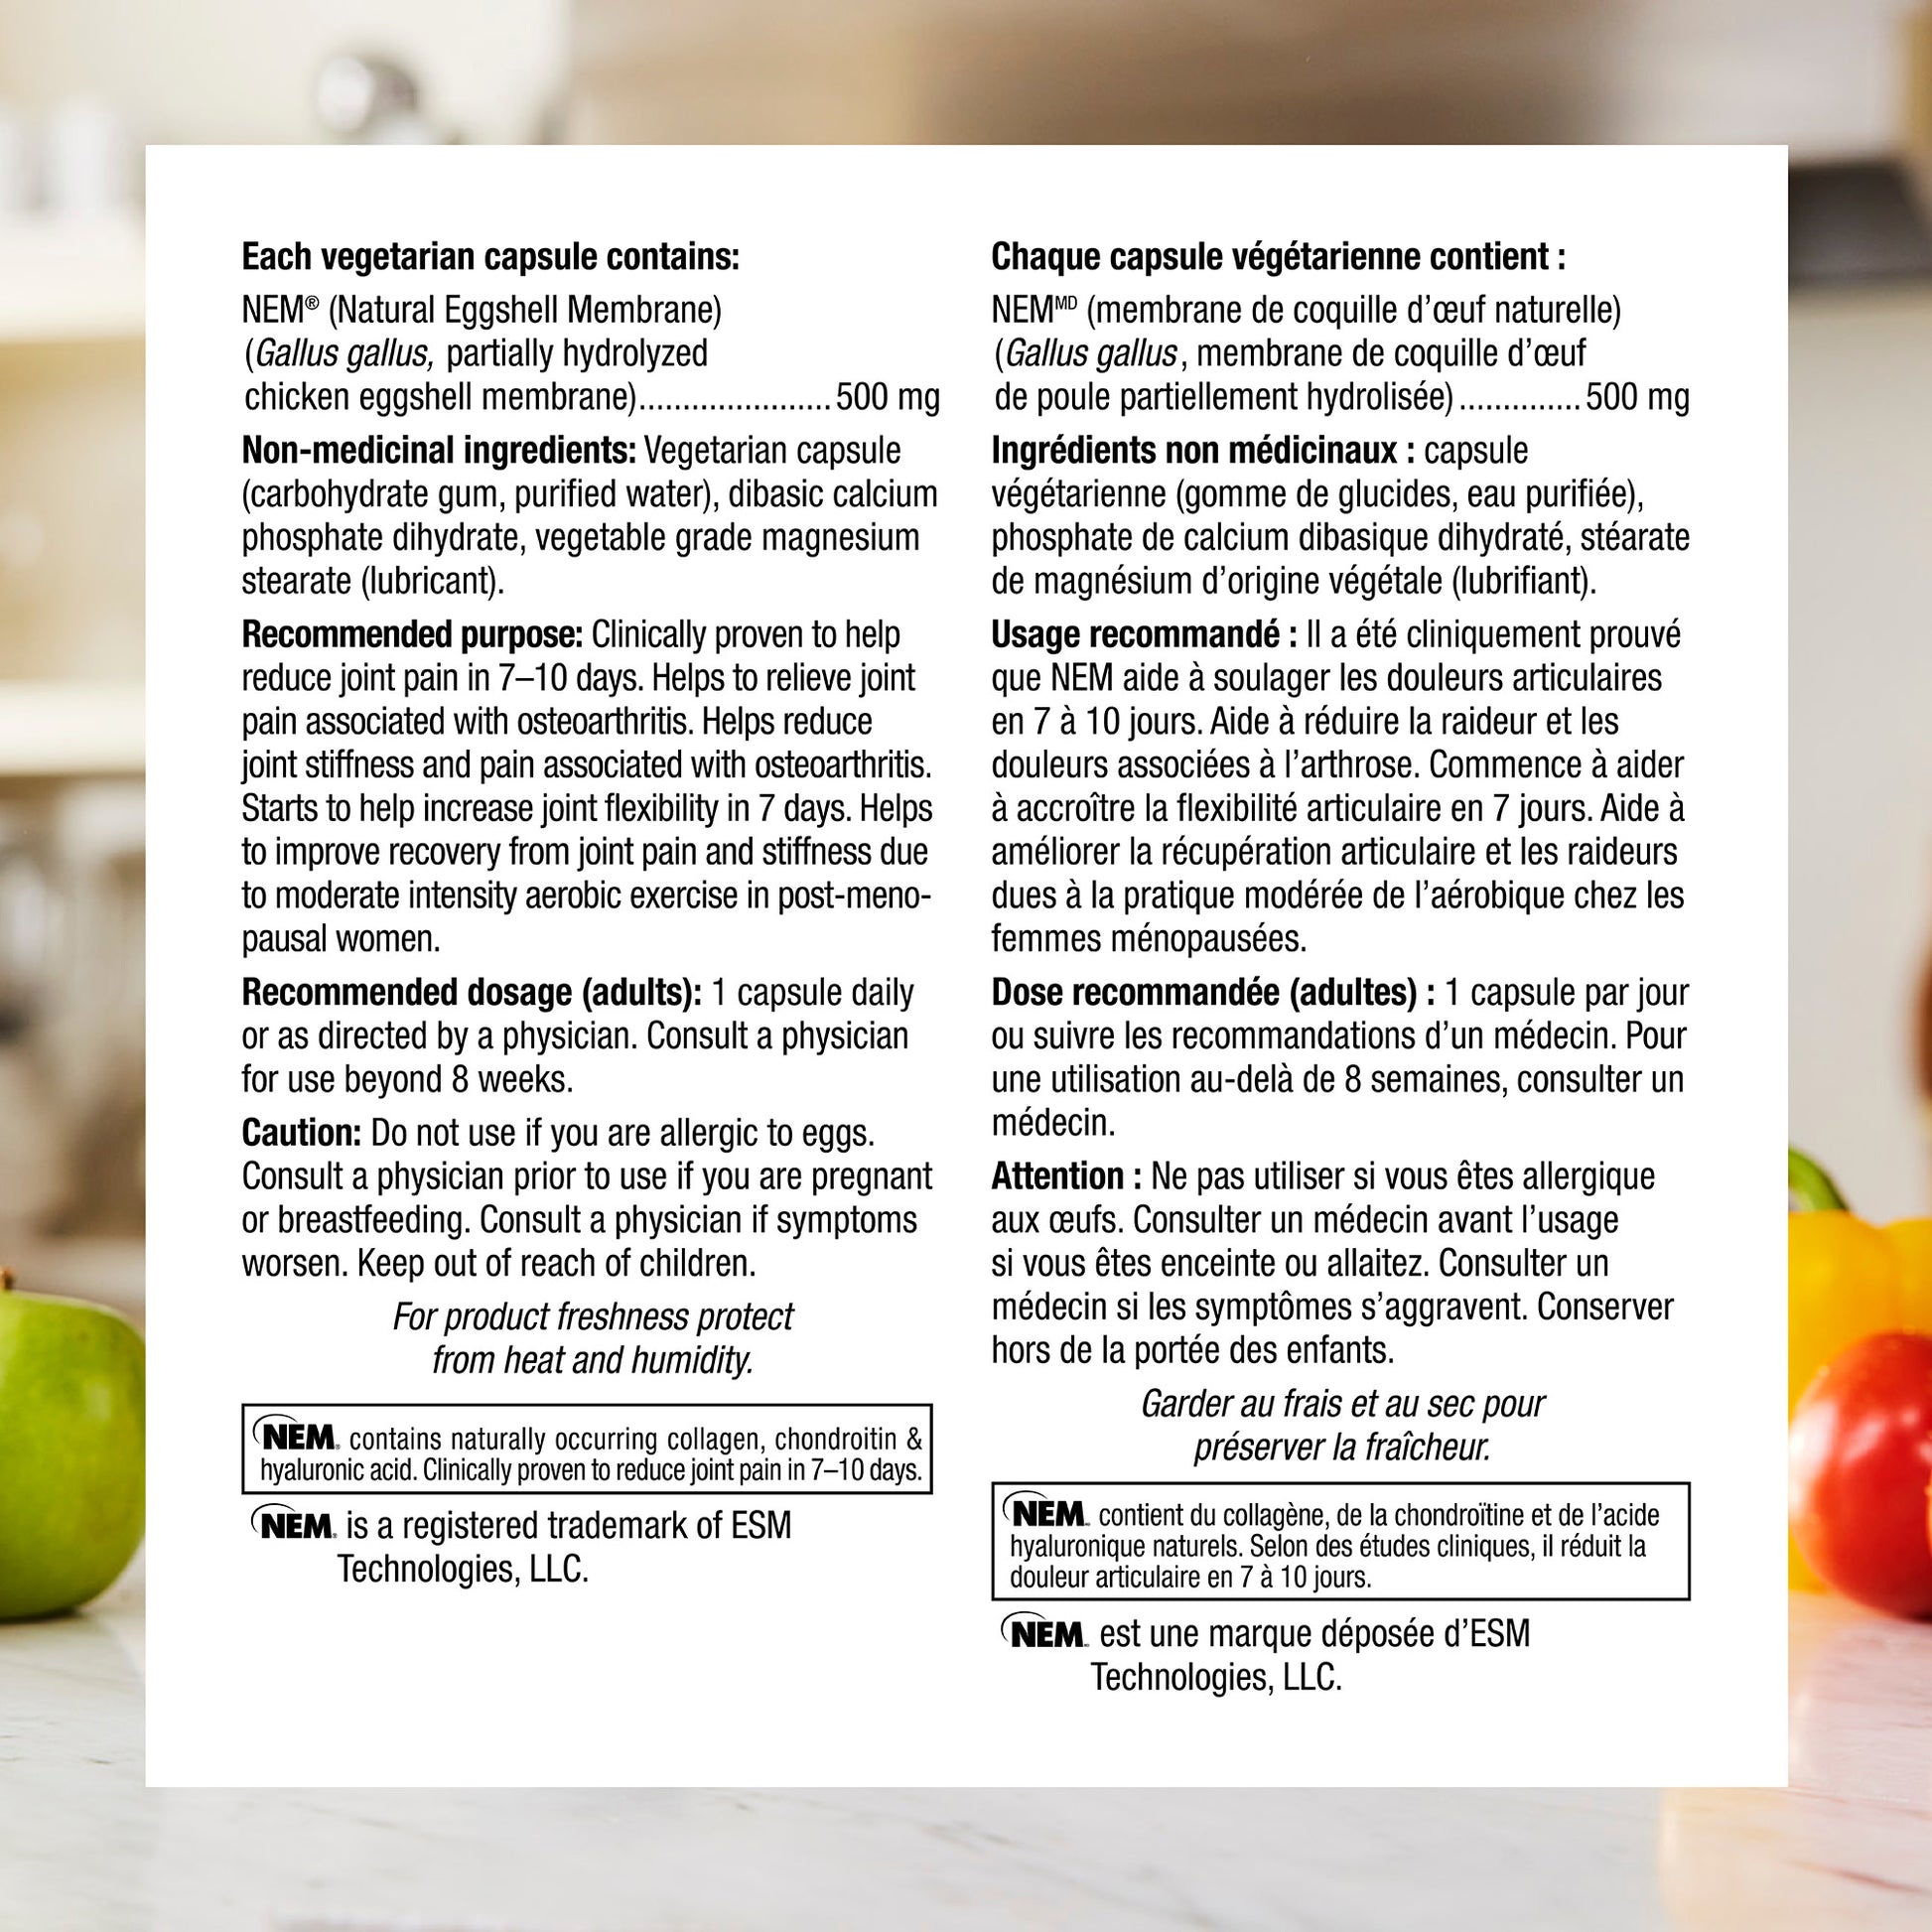 specifications-NEM 500 mg capsules végétariennes for Webber Naturals